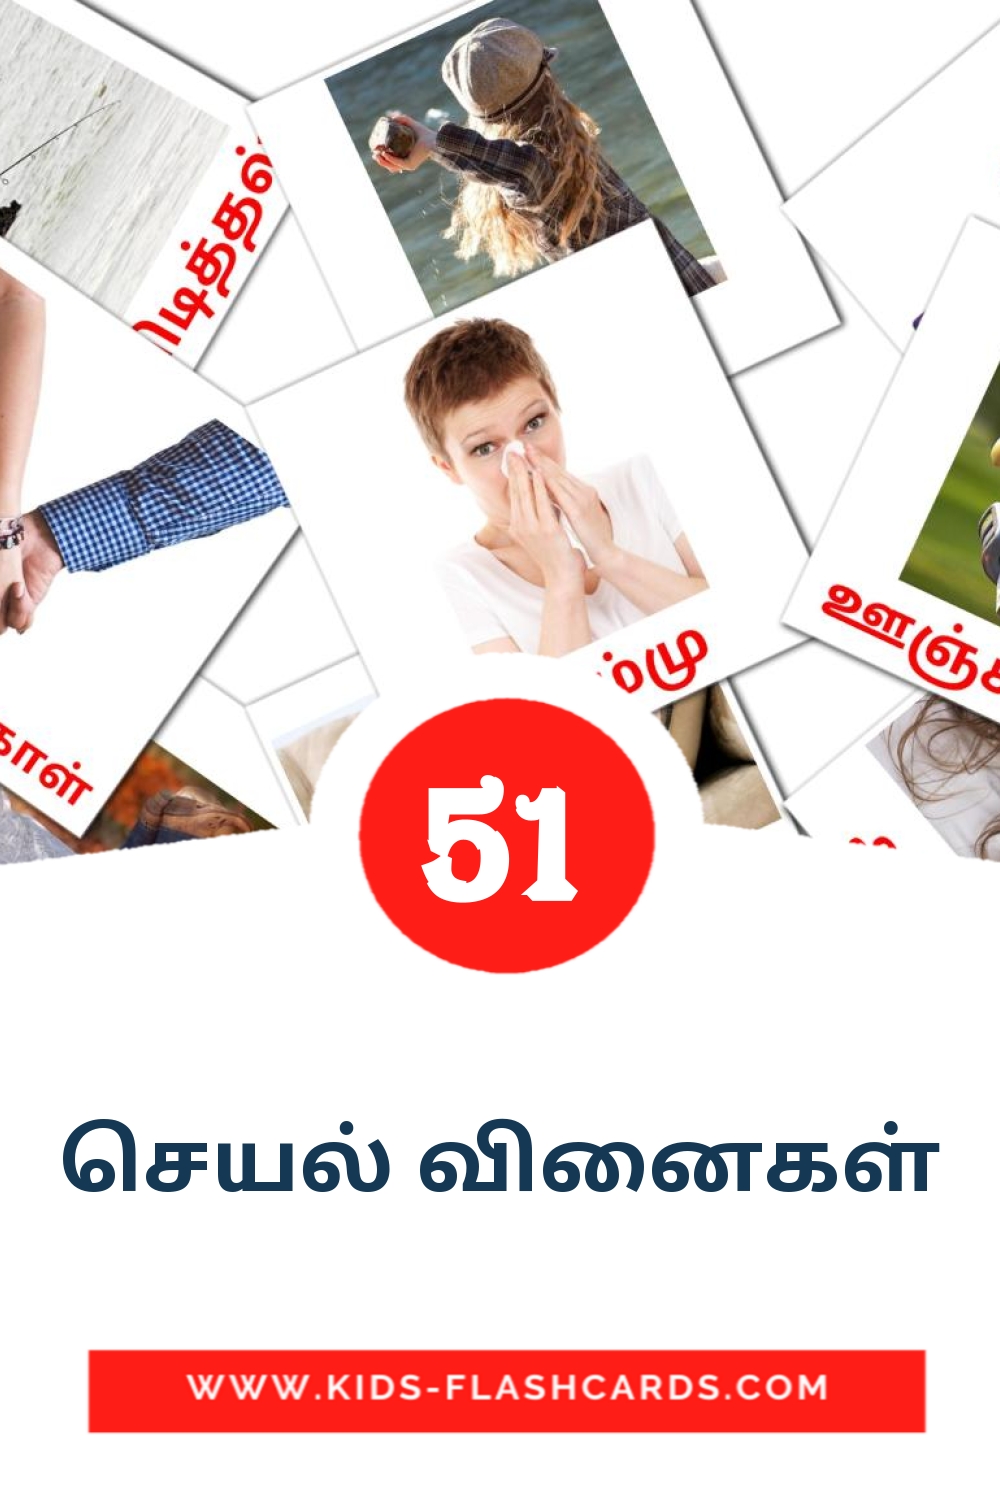 54 cartes illustrées de செயல் வினைகள் pour la maternelle en tamil